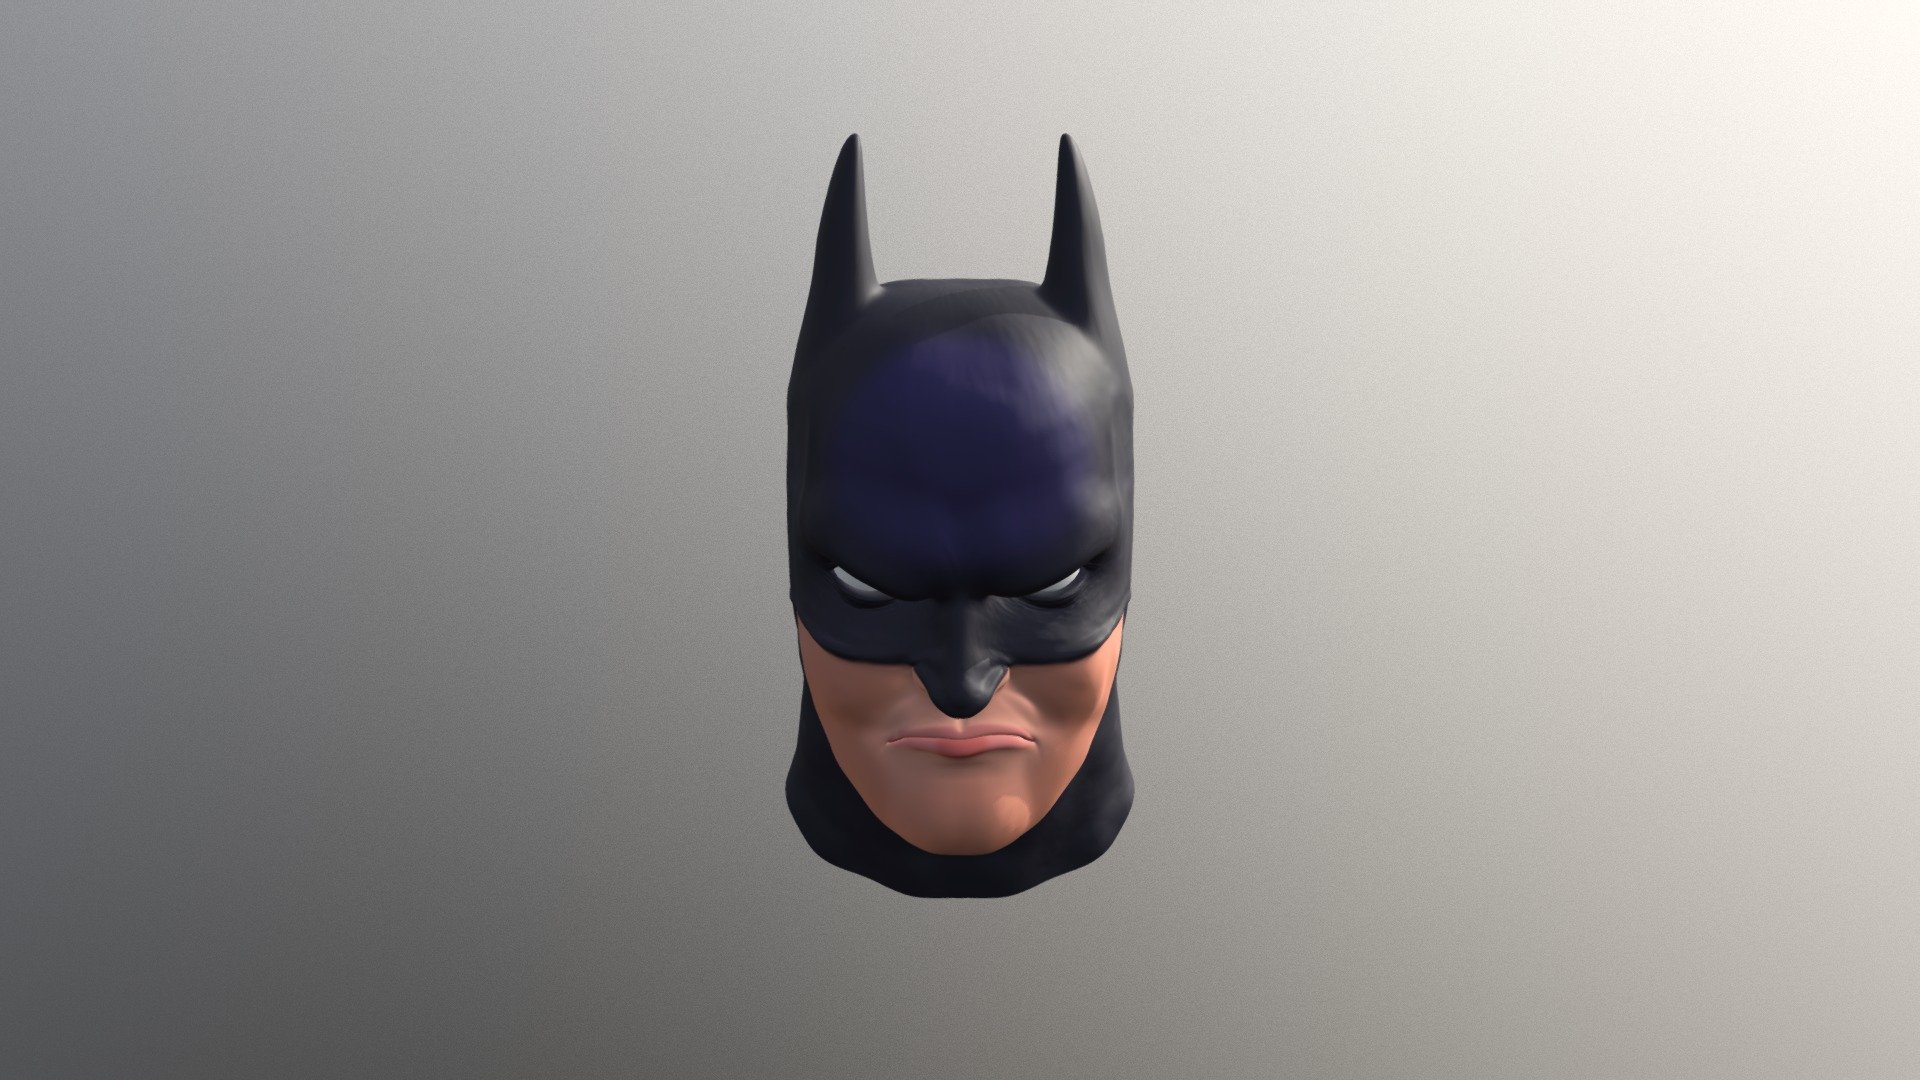 Head of Batman - 3D model by ajmarek (@ajmarek) [b396656]